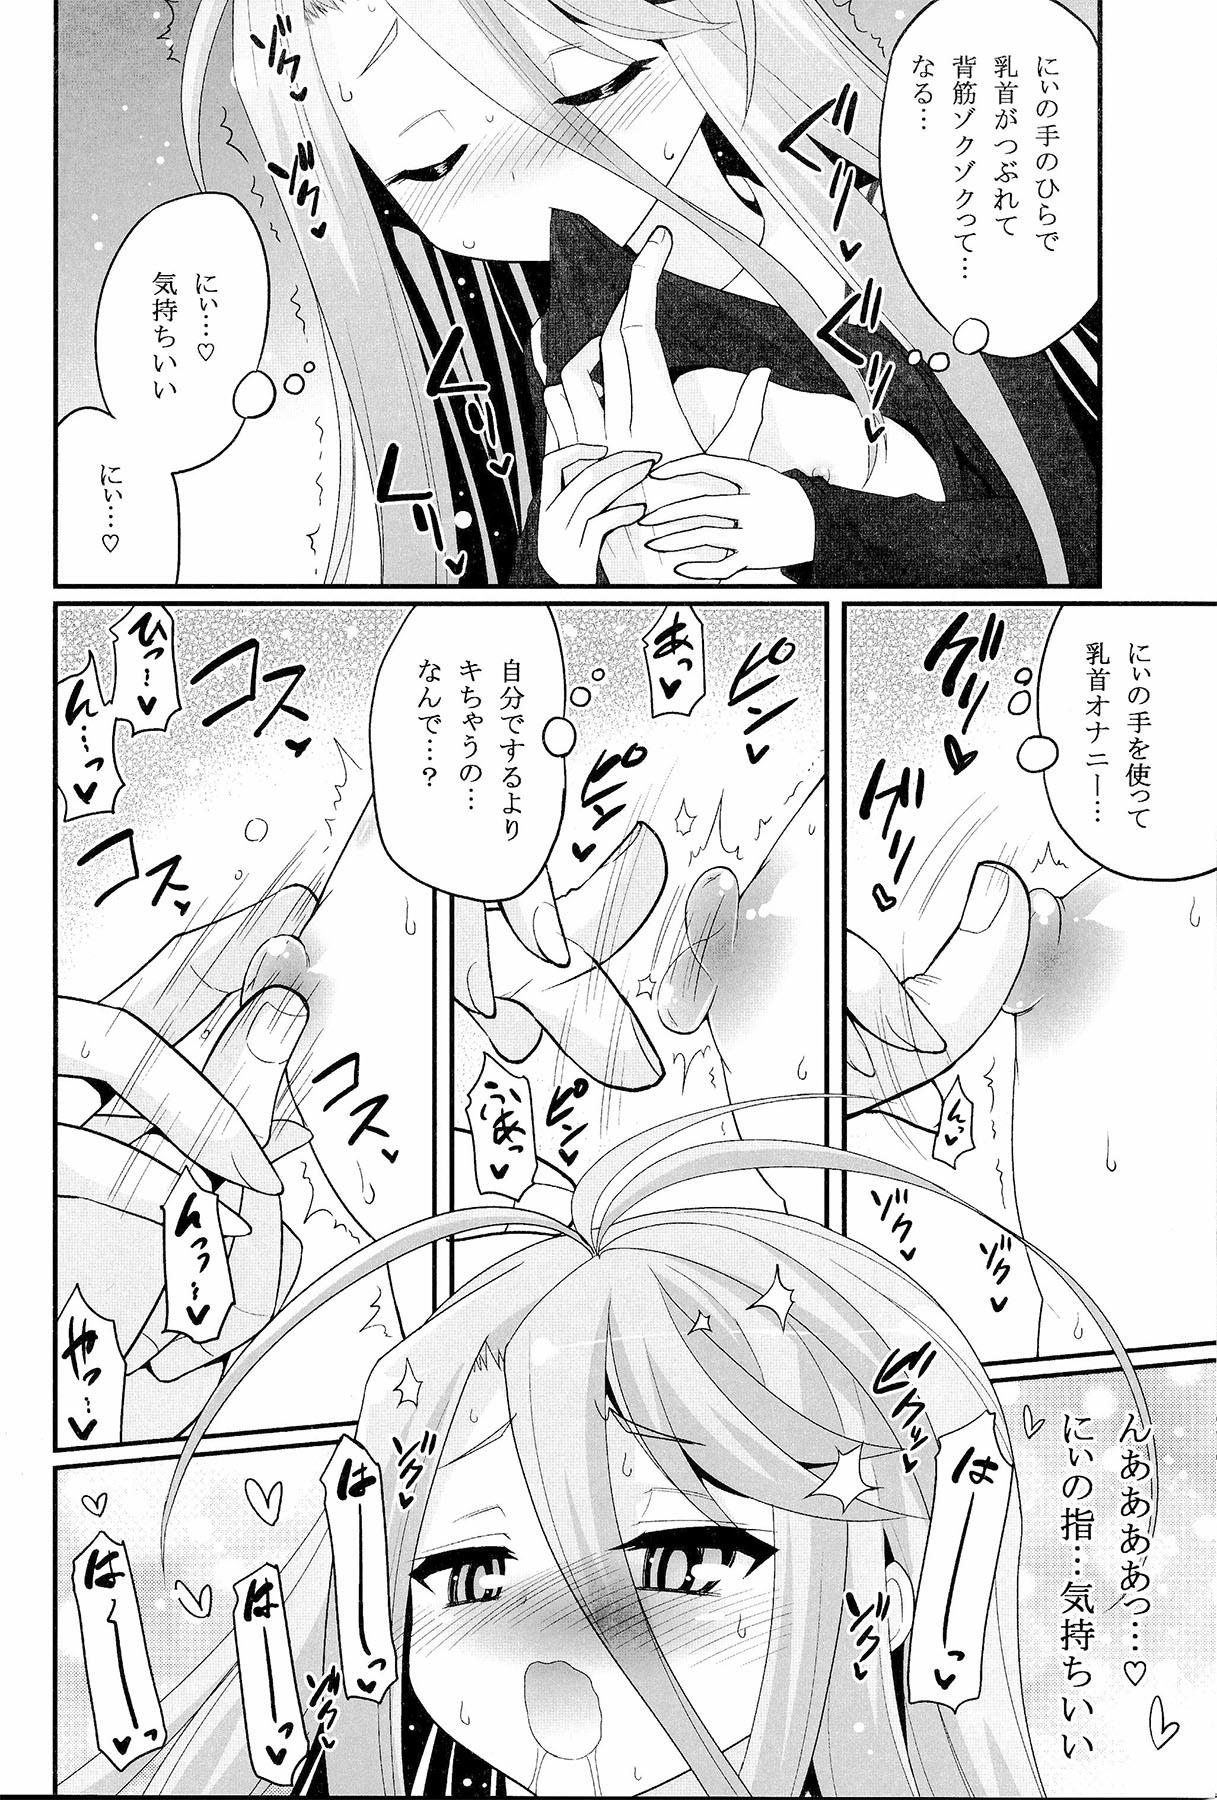 Comedor Shiro-chan ga nekomi wo osoi ni kuru sou desu - No game no life Footfetish - Page 5